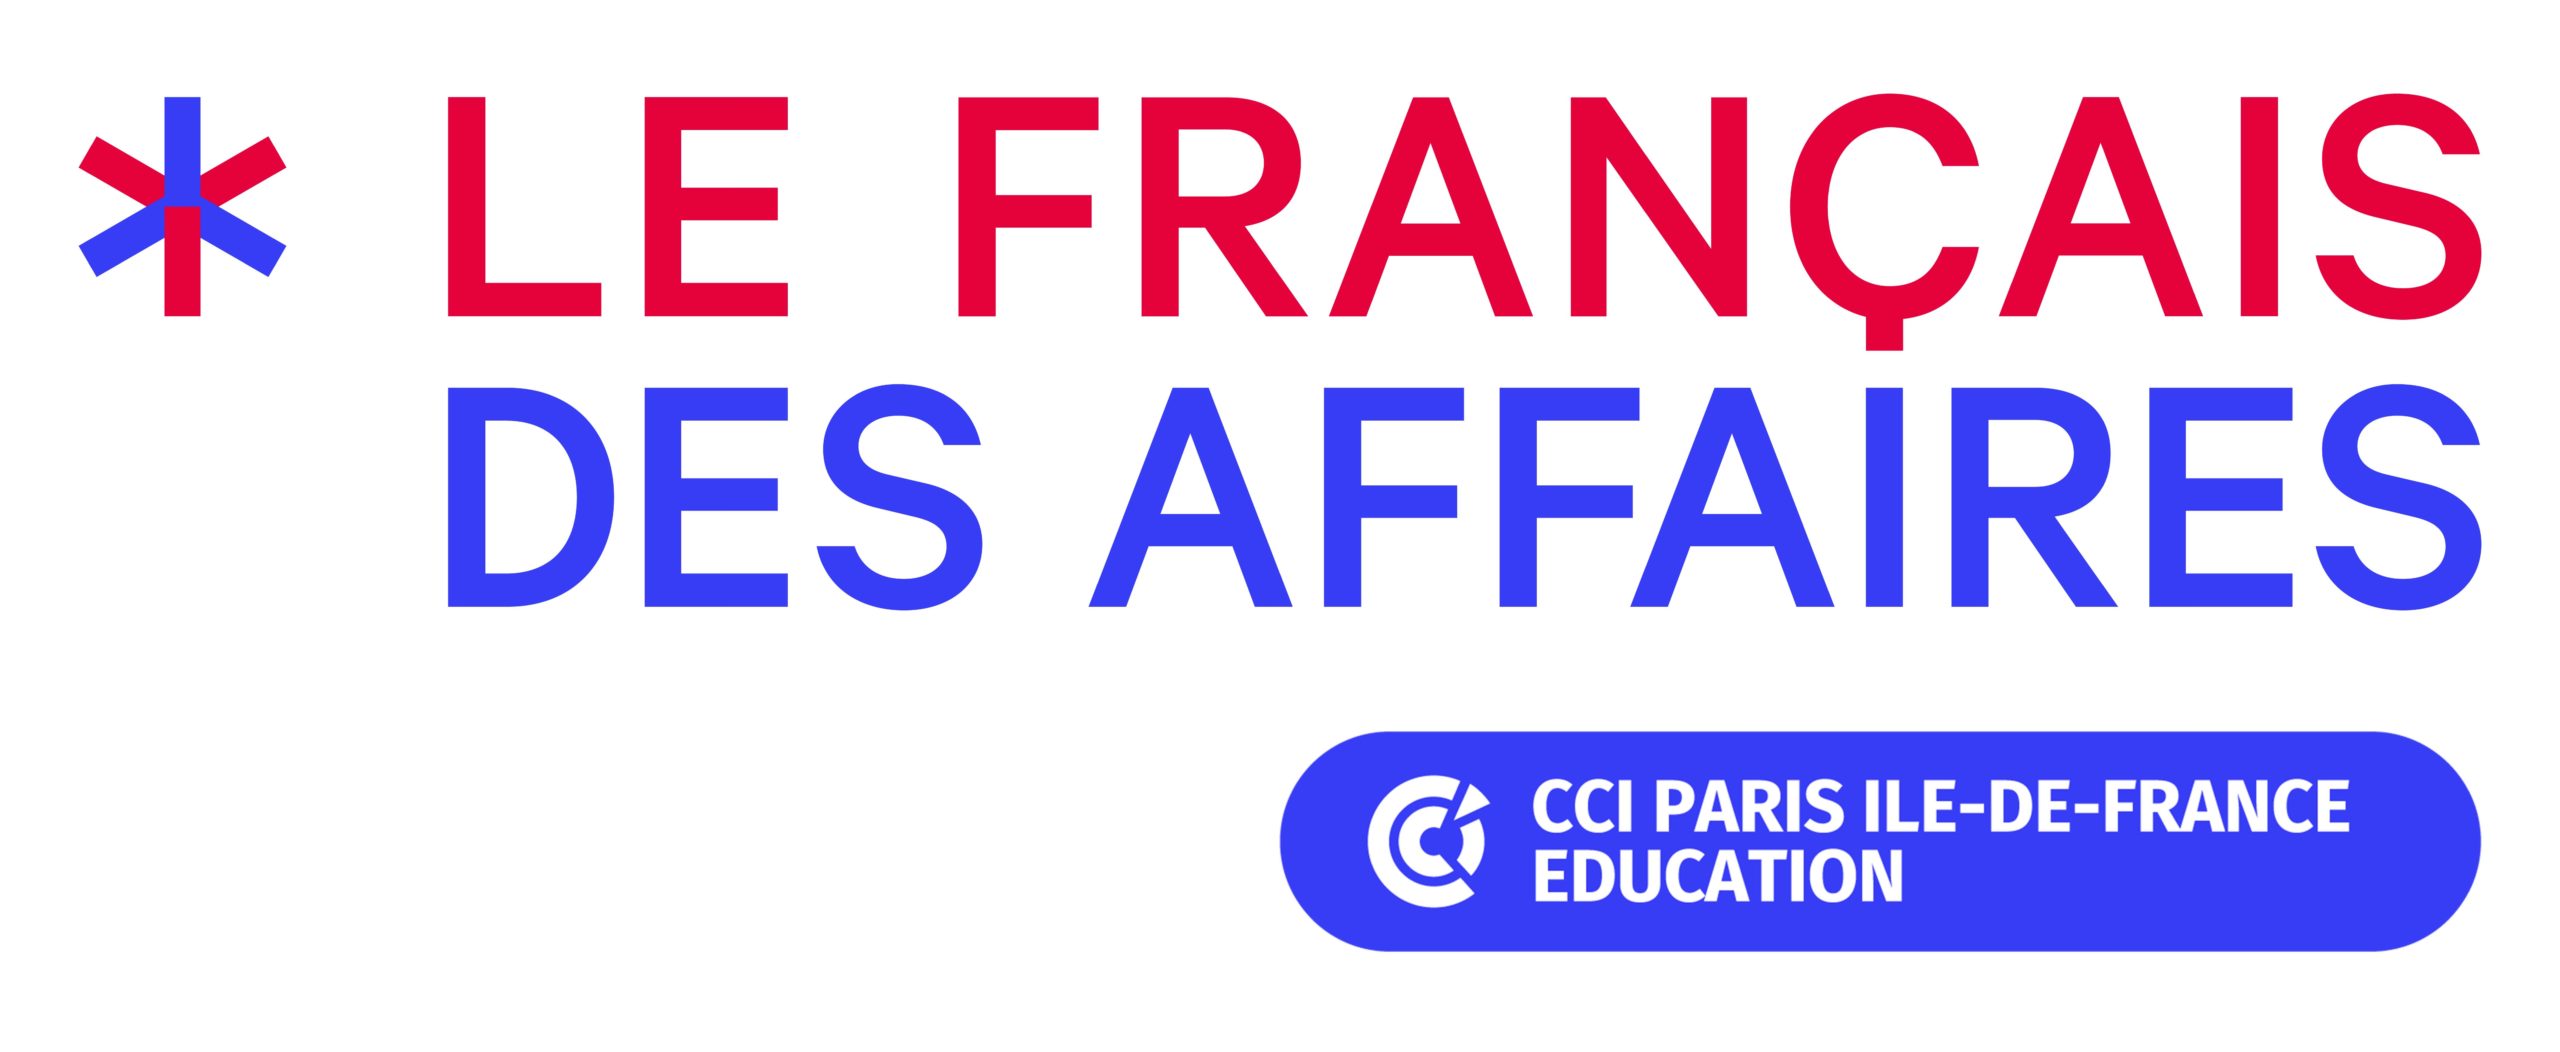 le francais des affaires cci education logotype rvb scaled